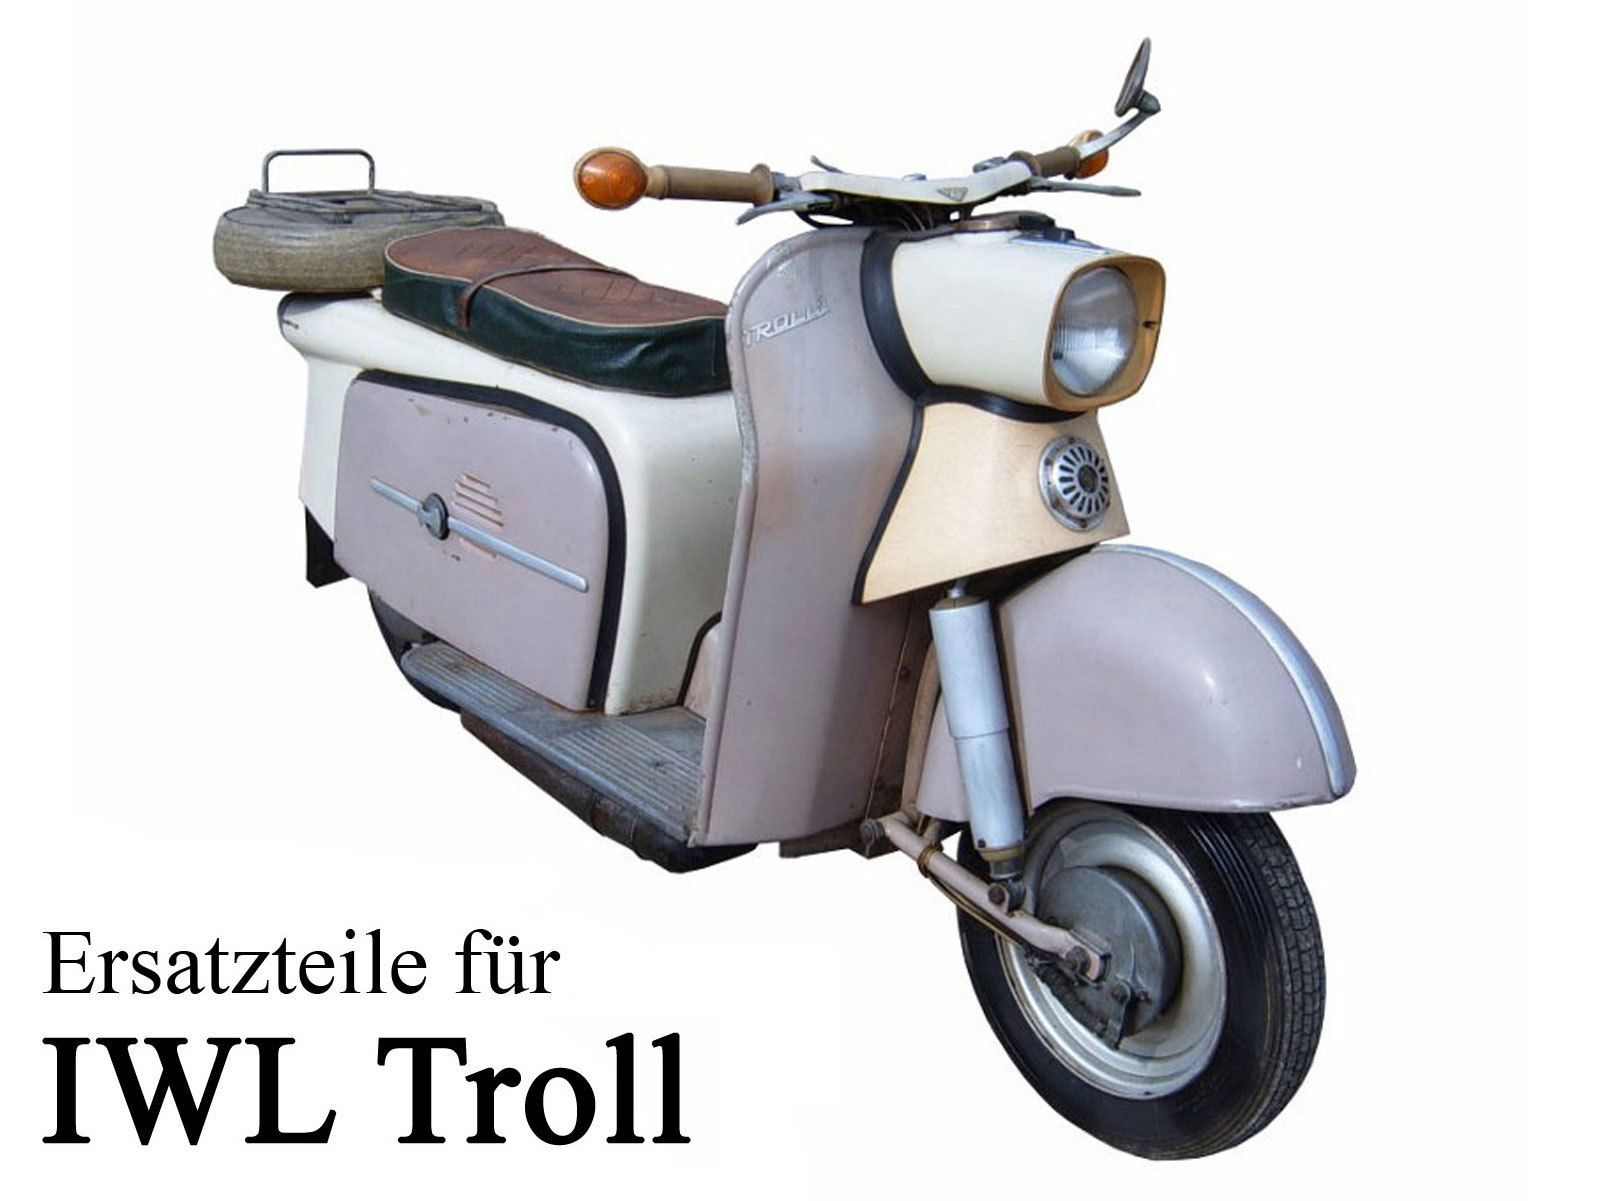 Ersatzteile kaufen für die DDR-Motorroller IWL Troll TR 150